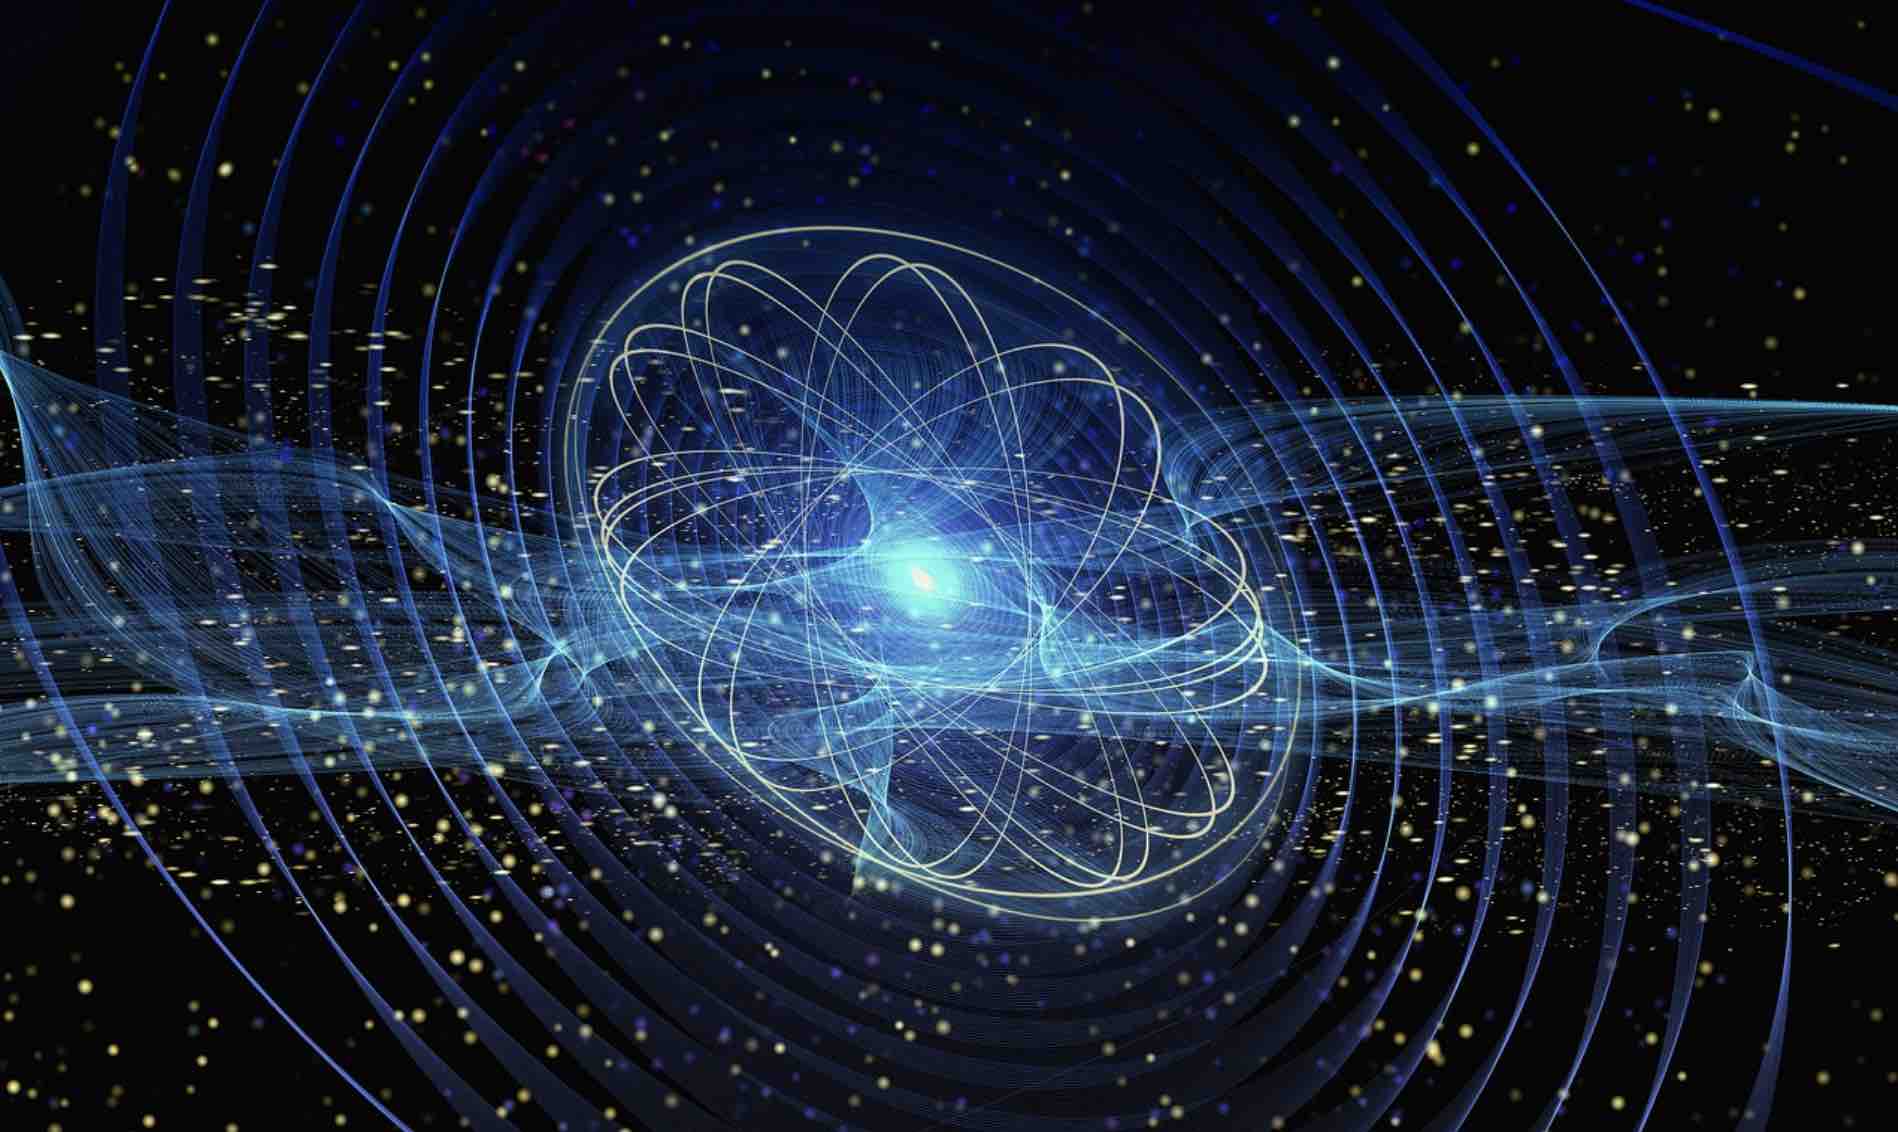 La découverte de l’intrication quantique pourrait conduire à une percée dans la mesure des événements ultrarapides